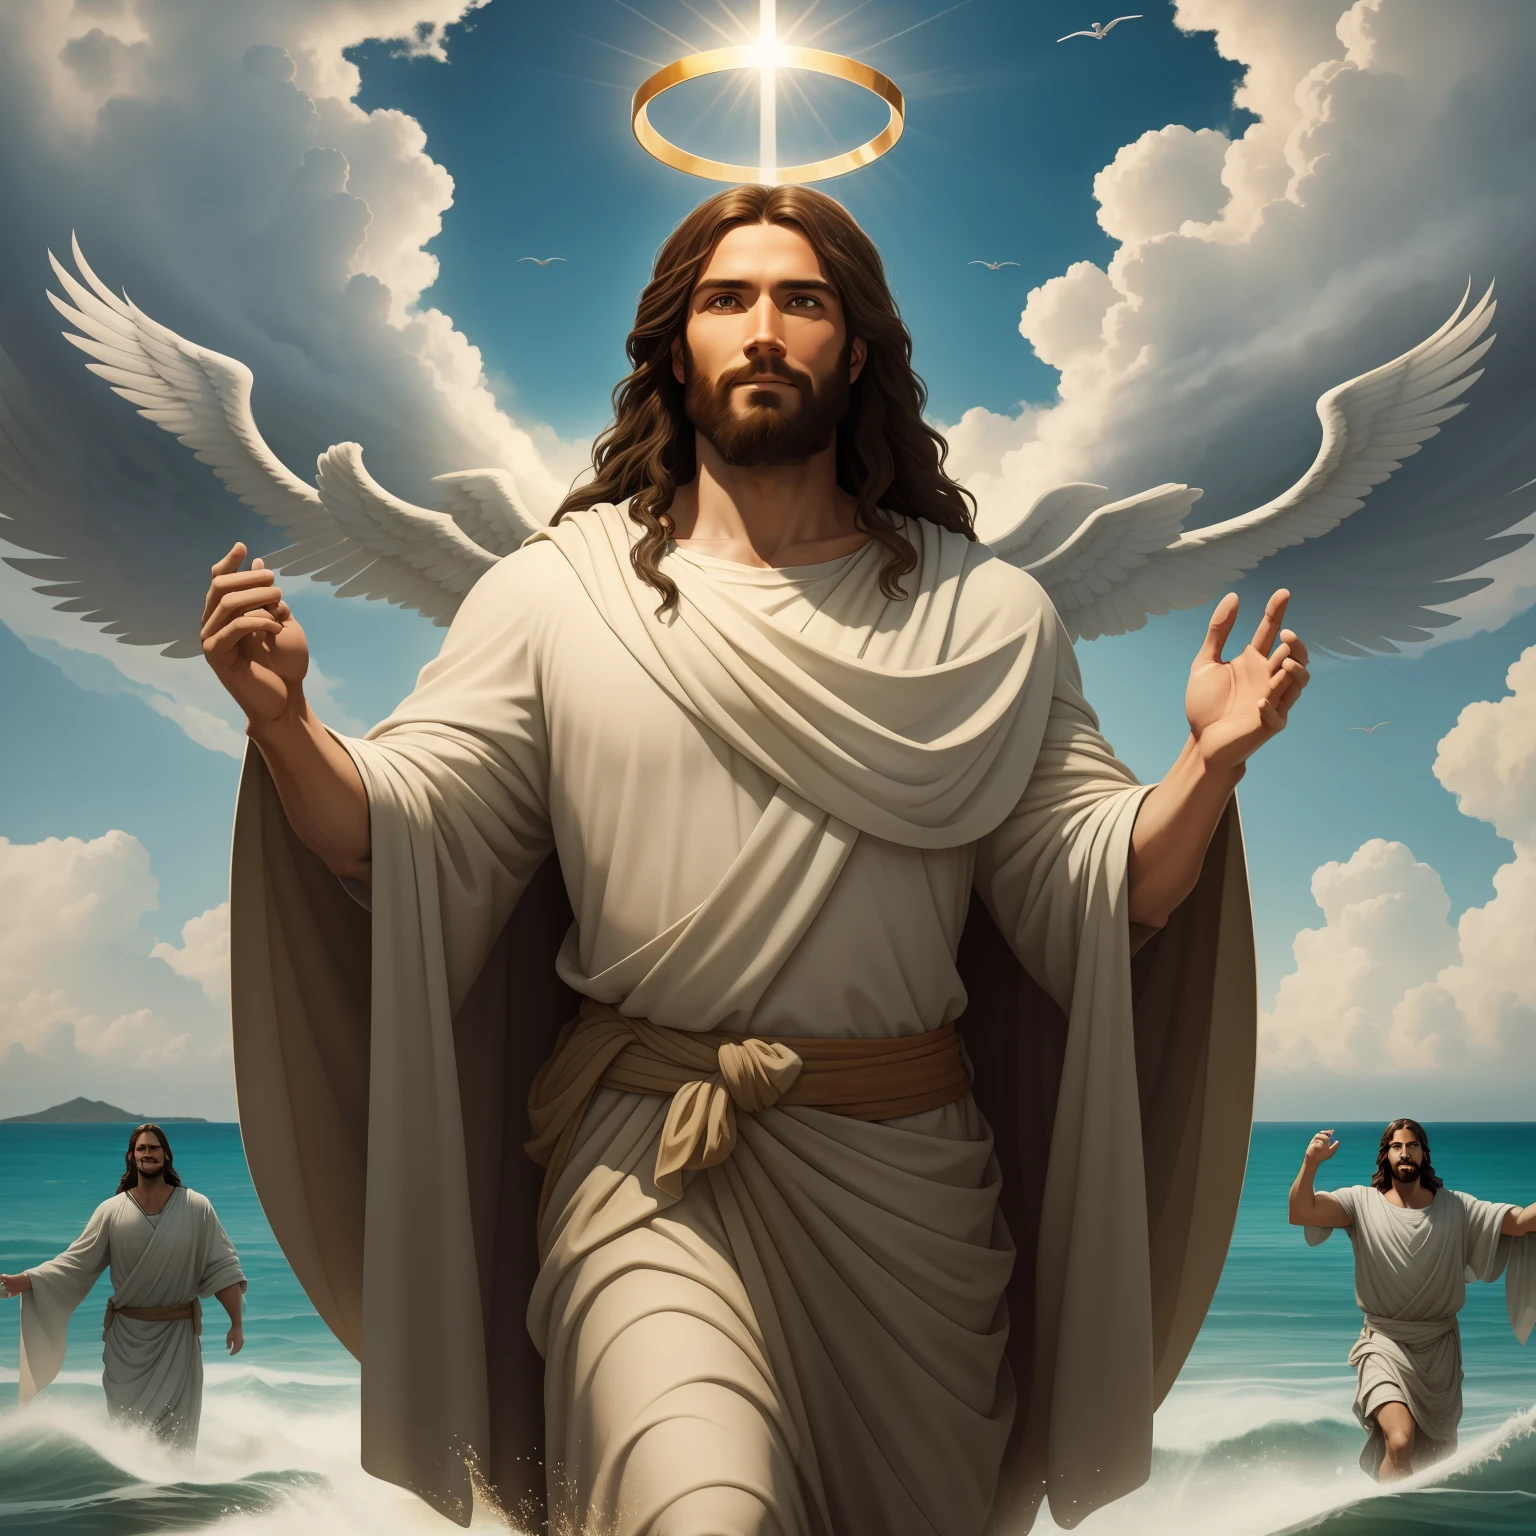 Jesus andando sobre as águas with a flying cloud in the background, Jesus andando sobre as águas, ilustração bíblica, representação bíblica épica, forçando-o a fugir, saindo do oceano, ! segurando na mão!, desembarcando, deus do oceano, bela representação, Modelo 8k 3D, realista,
um realista 3D de Jesus com uma auréola no céu, Jesus Cristo, sorrindo no céu, portrait of Jesus Cristo, rosto de jesus, 33 jovem deus todo-poderoso, retrato de um deus celestial, Greg Olsen, gigachad jesus, Jesus de Nazaré, jesus, a face de deus, Deus olhando para mim, ele está cumprimentando você calorosamente, ele está feliz, imagem de avatar